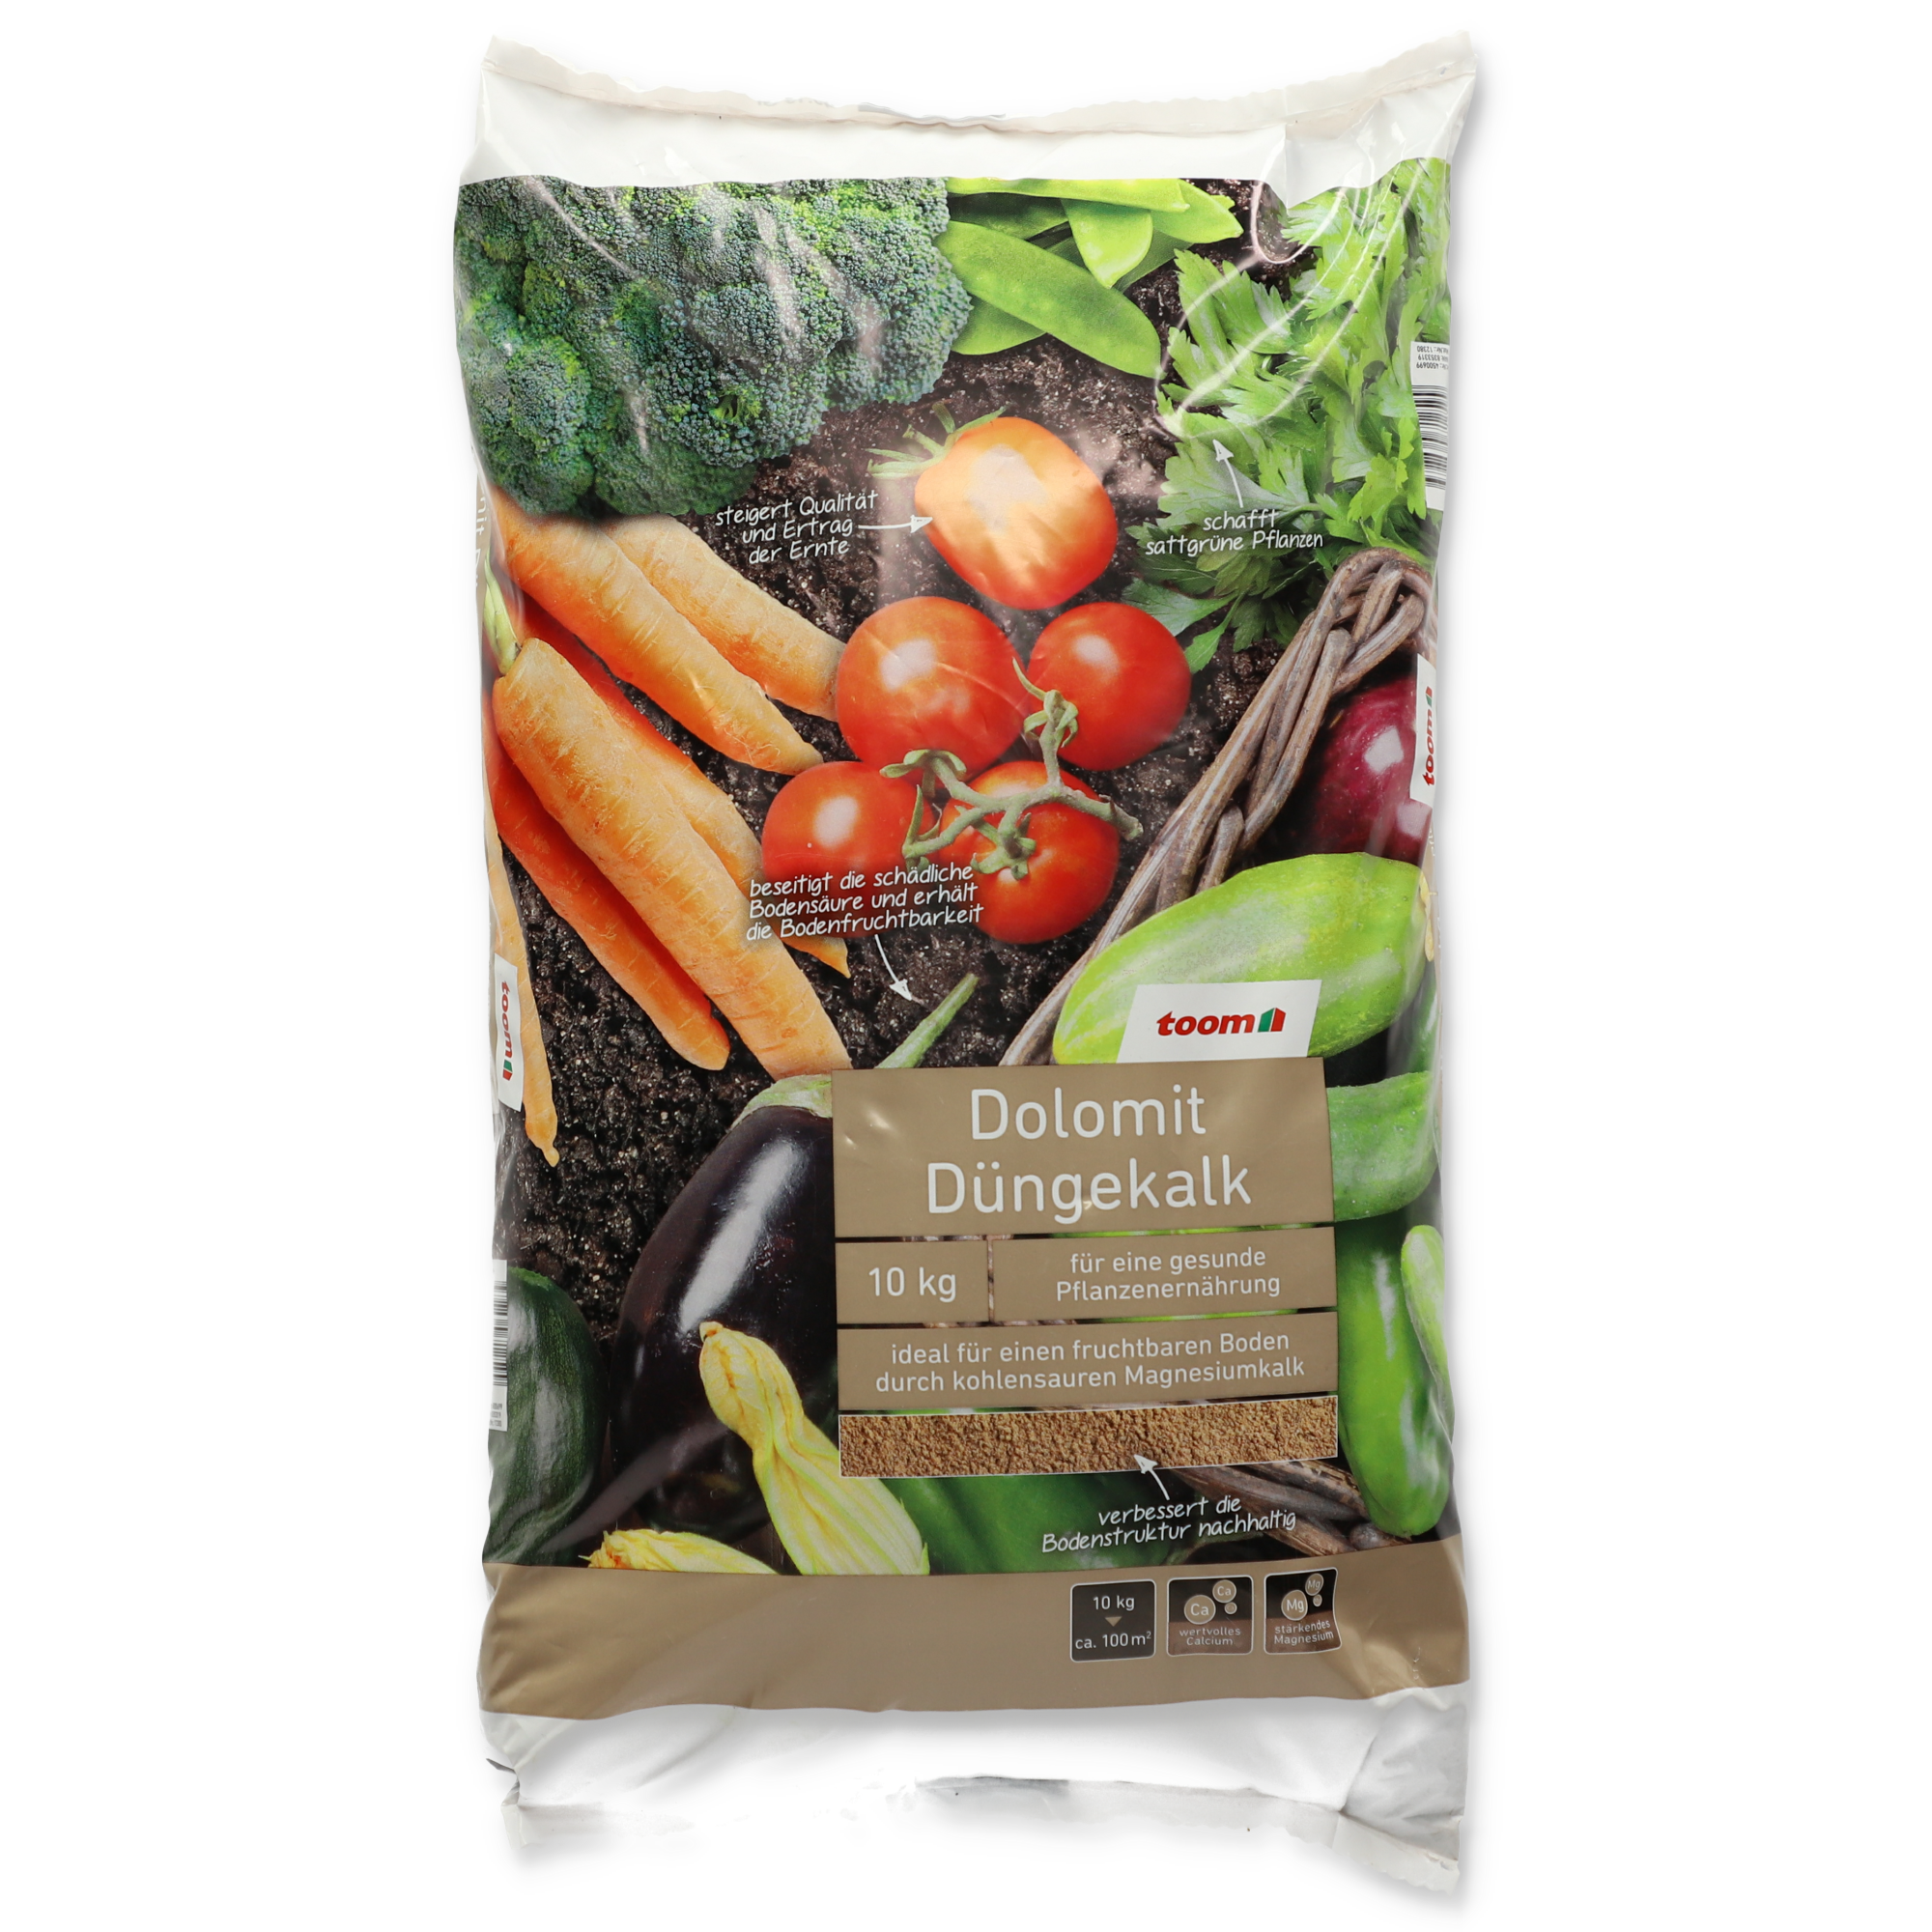 Düngekalk 'Dolomit' 25 kg + product picture